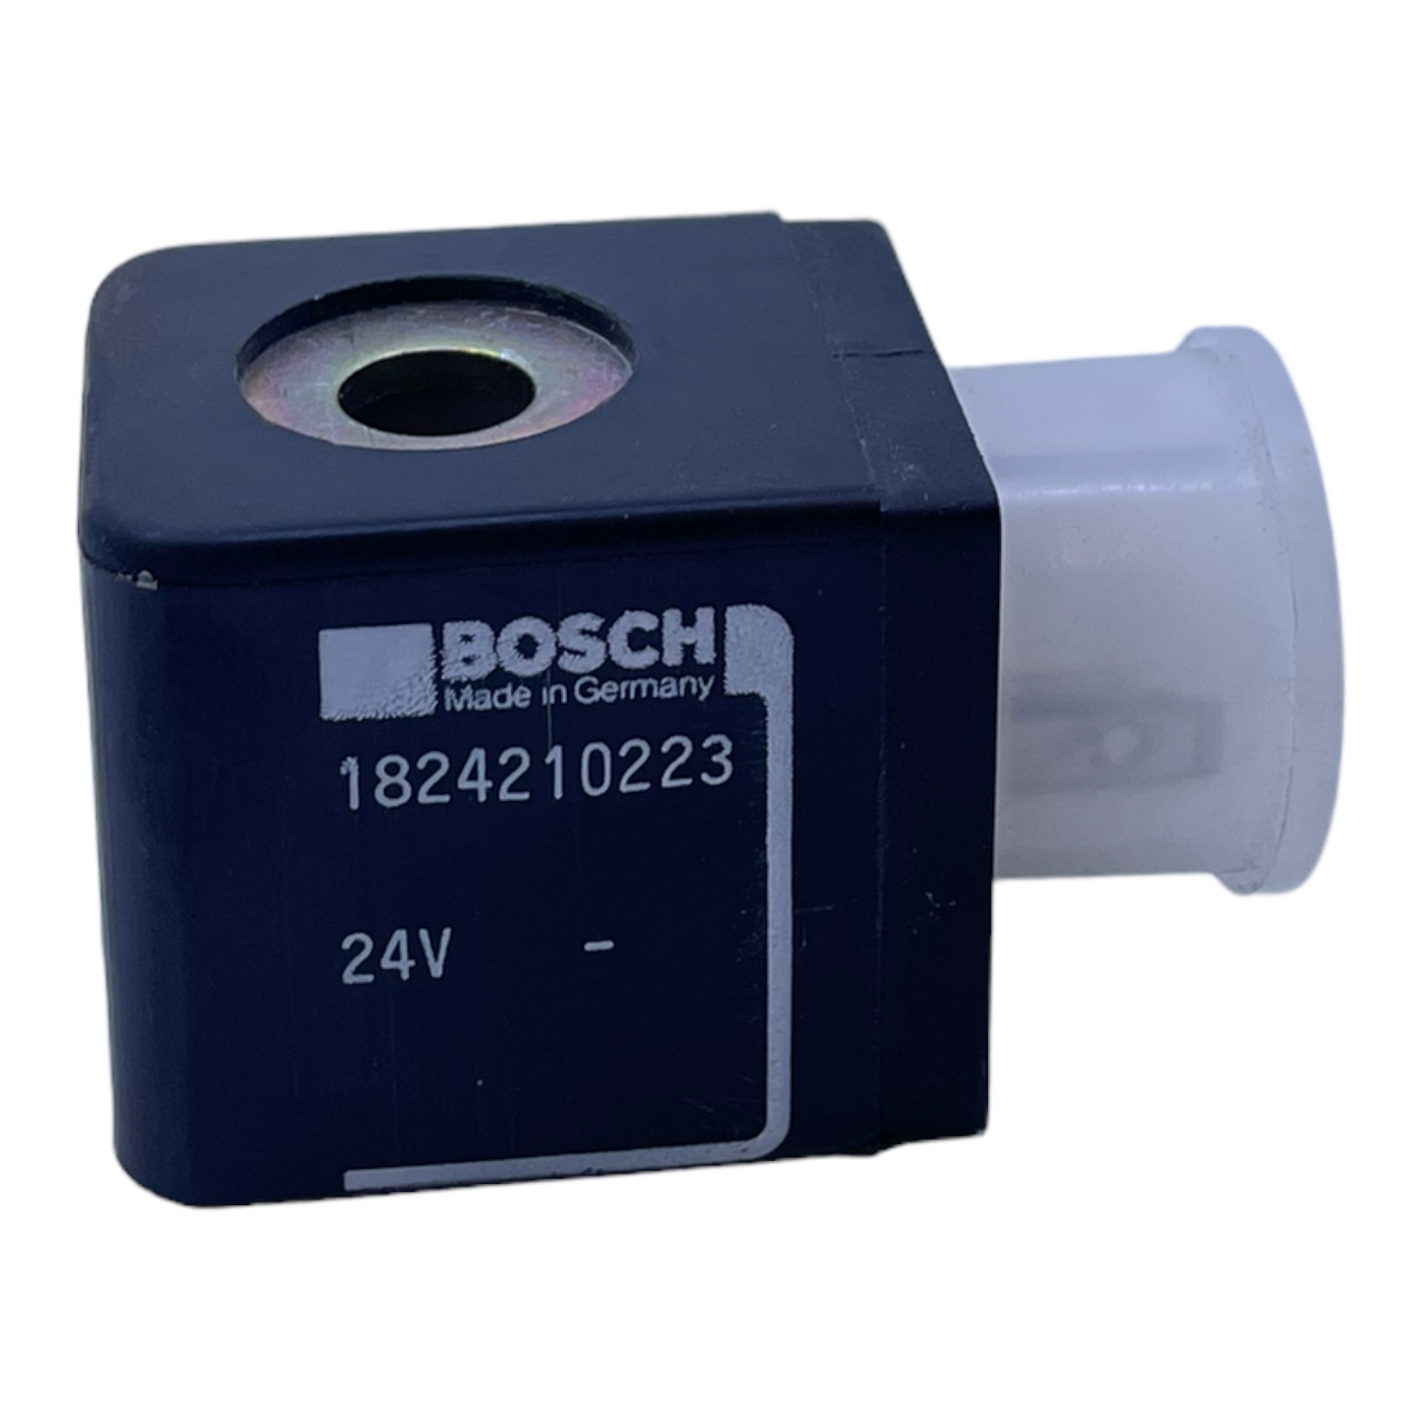 Bosch 1824210223 solenoid coil 24V Bosch 1824210223 solenoid coil